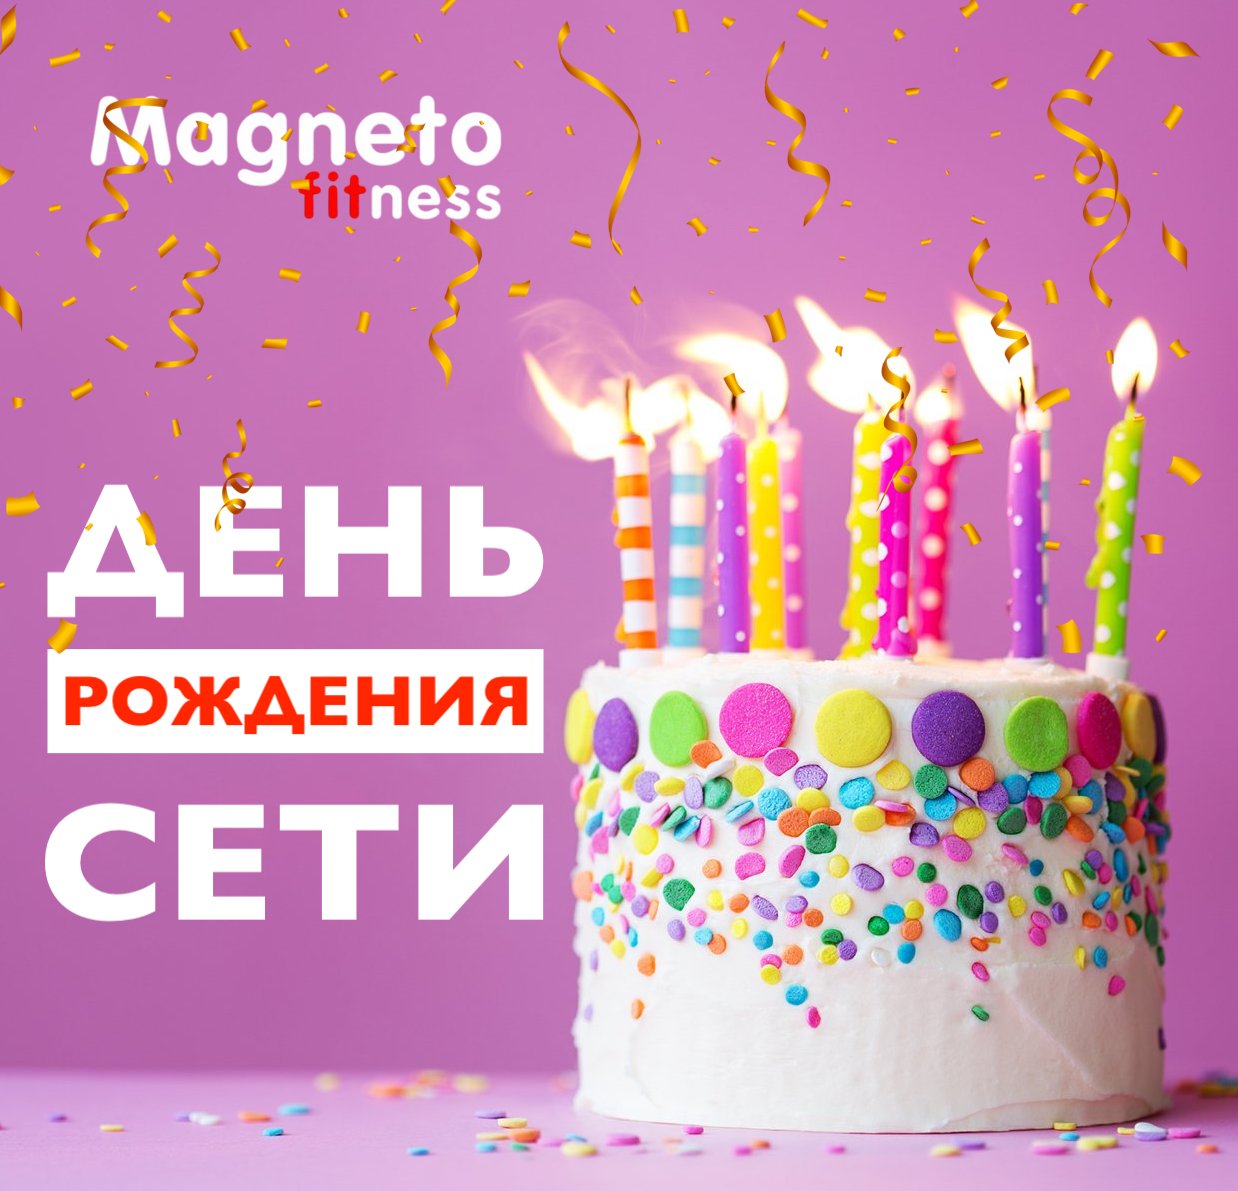 4 апреля ДЕНЬ РОЖДЕНИЯ СЕТИ - Magneto Fitness Переделкино